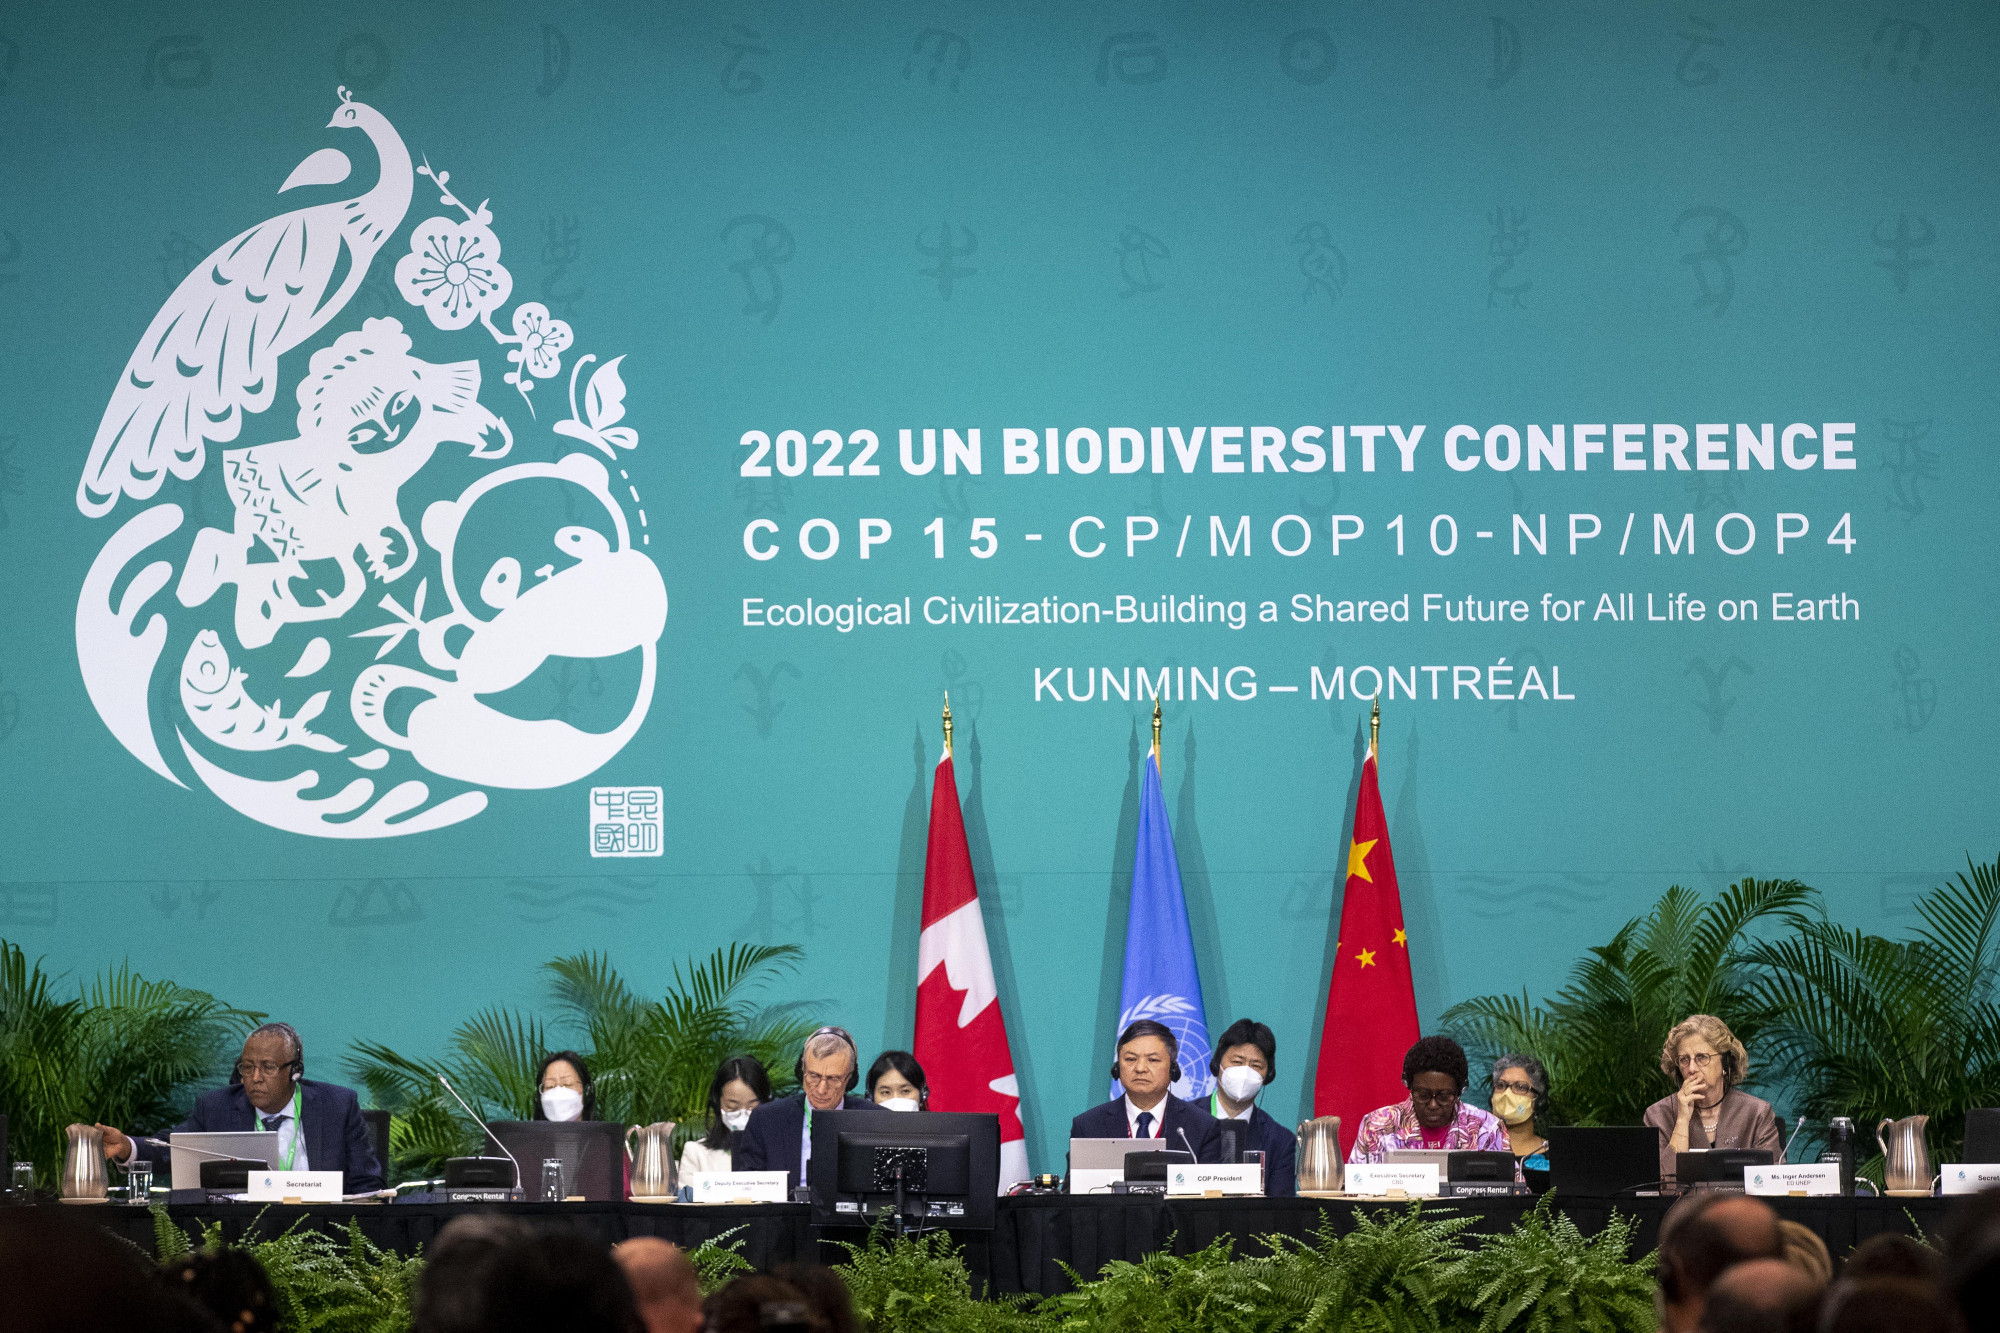 Történelmi megállapodás született a biológiai sokféleség csökkenésének 2030-ig történő megállításáról